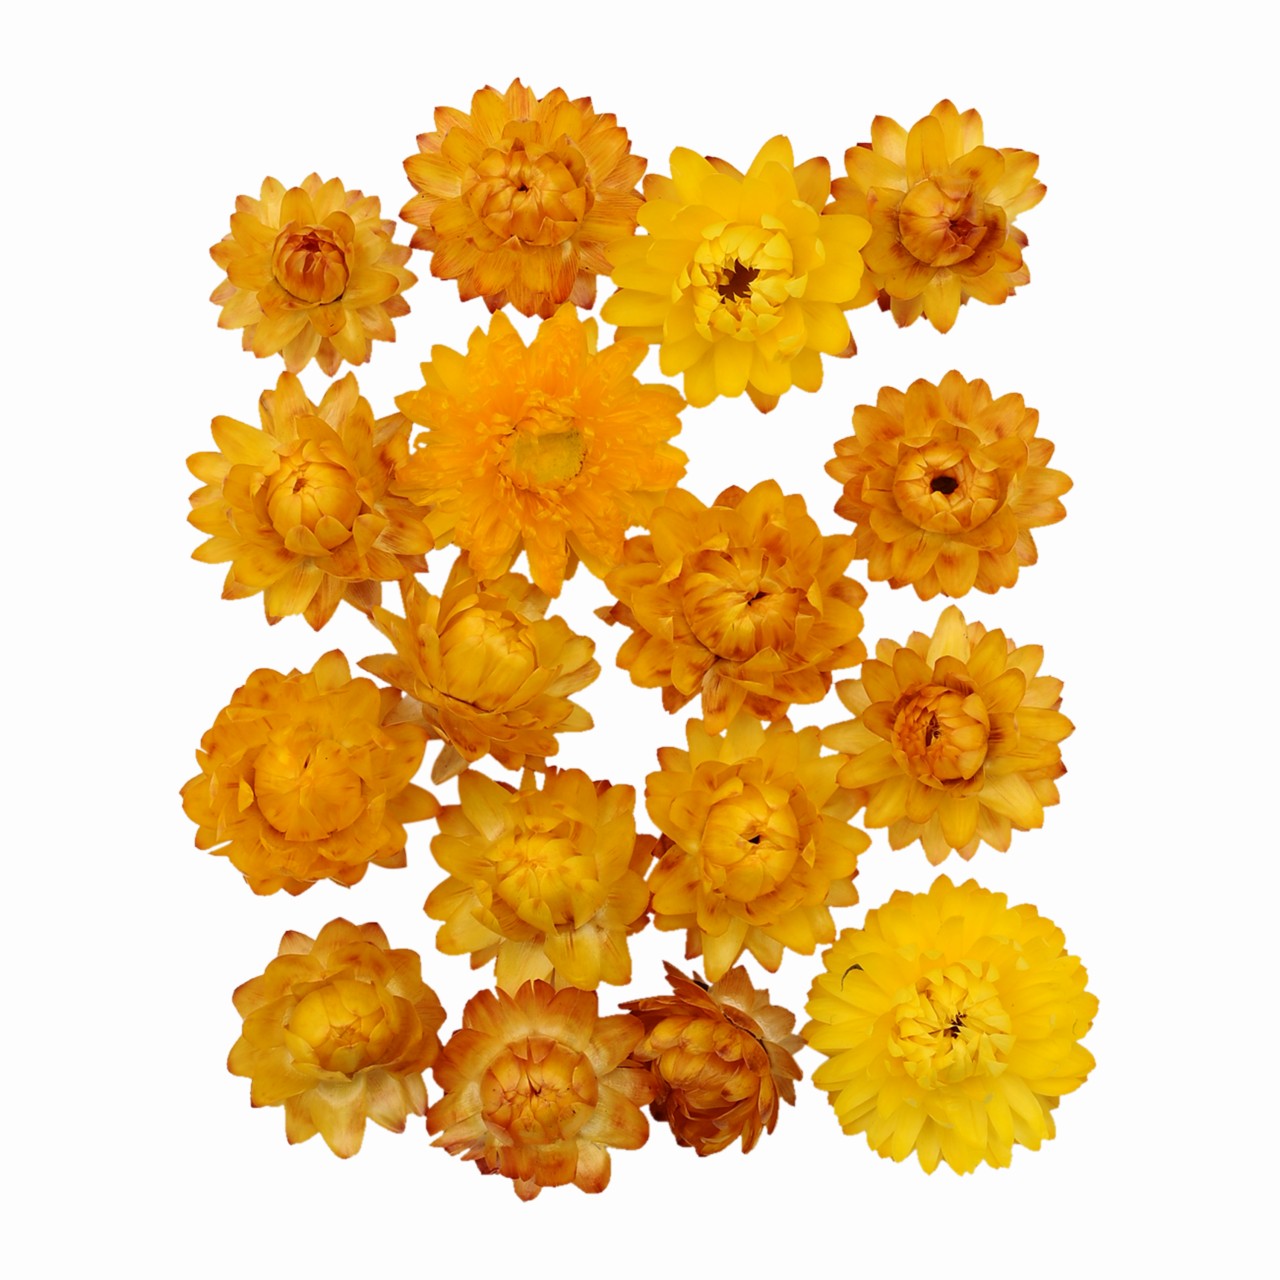 マイフラ 通販 風の花 ヘリクリヘッド イエロー ドライフラワー Dn 004 ナチュラル イエロー ドライフラワー ナチュラル 素材 全国にmagiq 花器 花資材などをお届けします